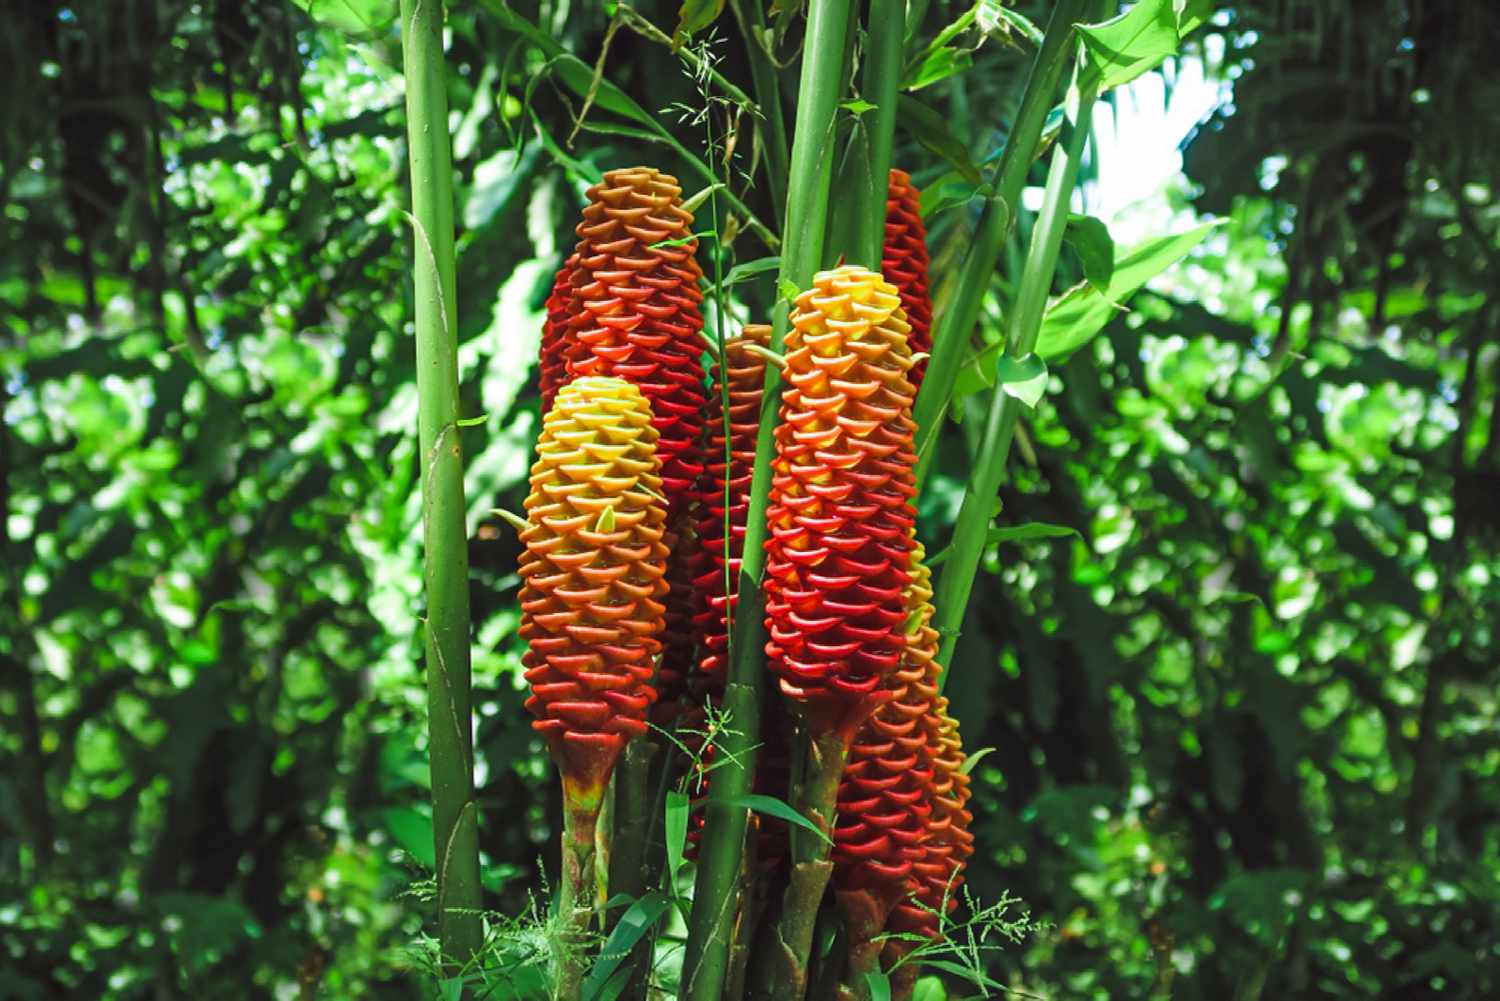 Plante de gingembre en forme de ruche avec des bractées rouges et jaunes en forme de cône le long de hautes tiges vertes